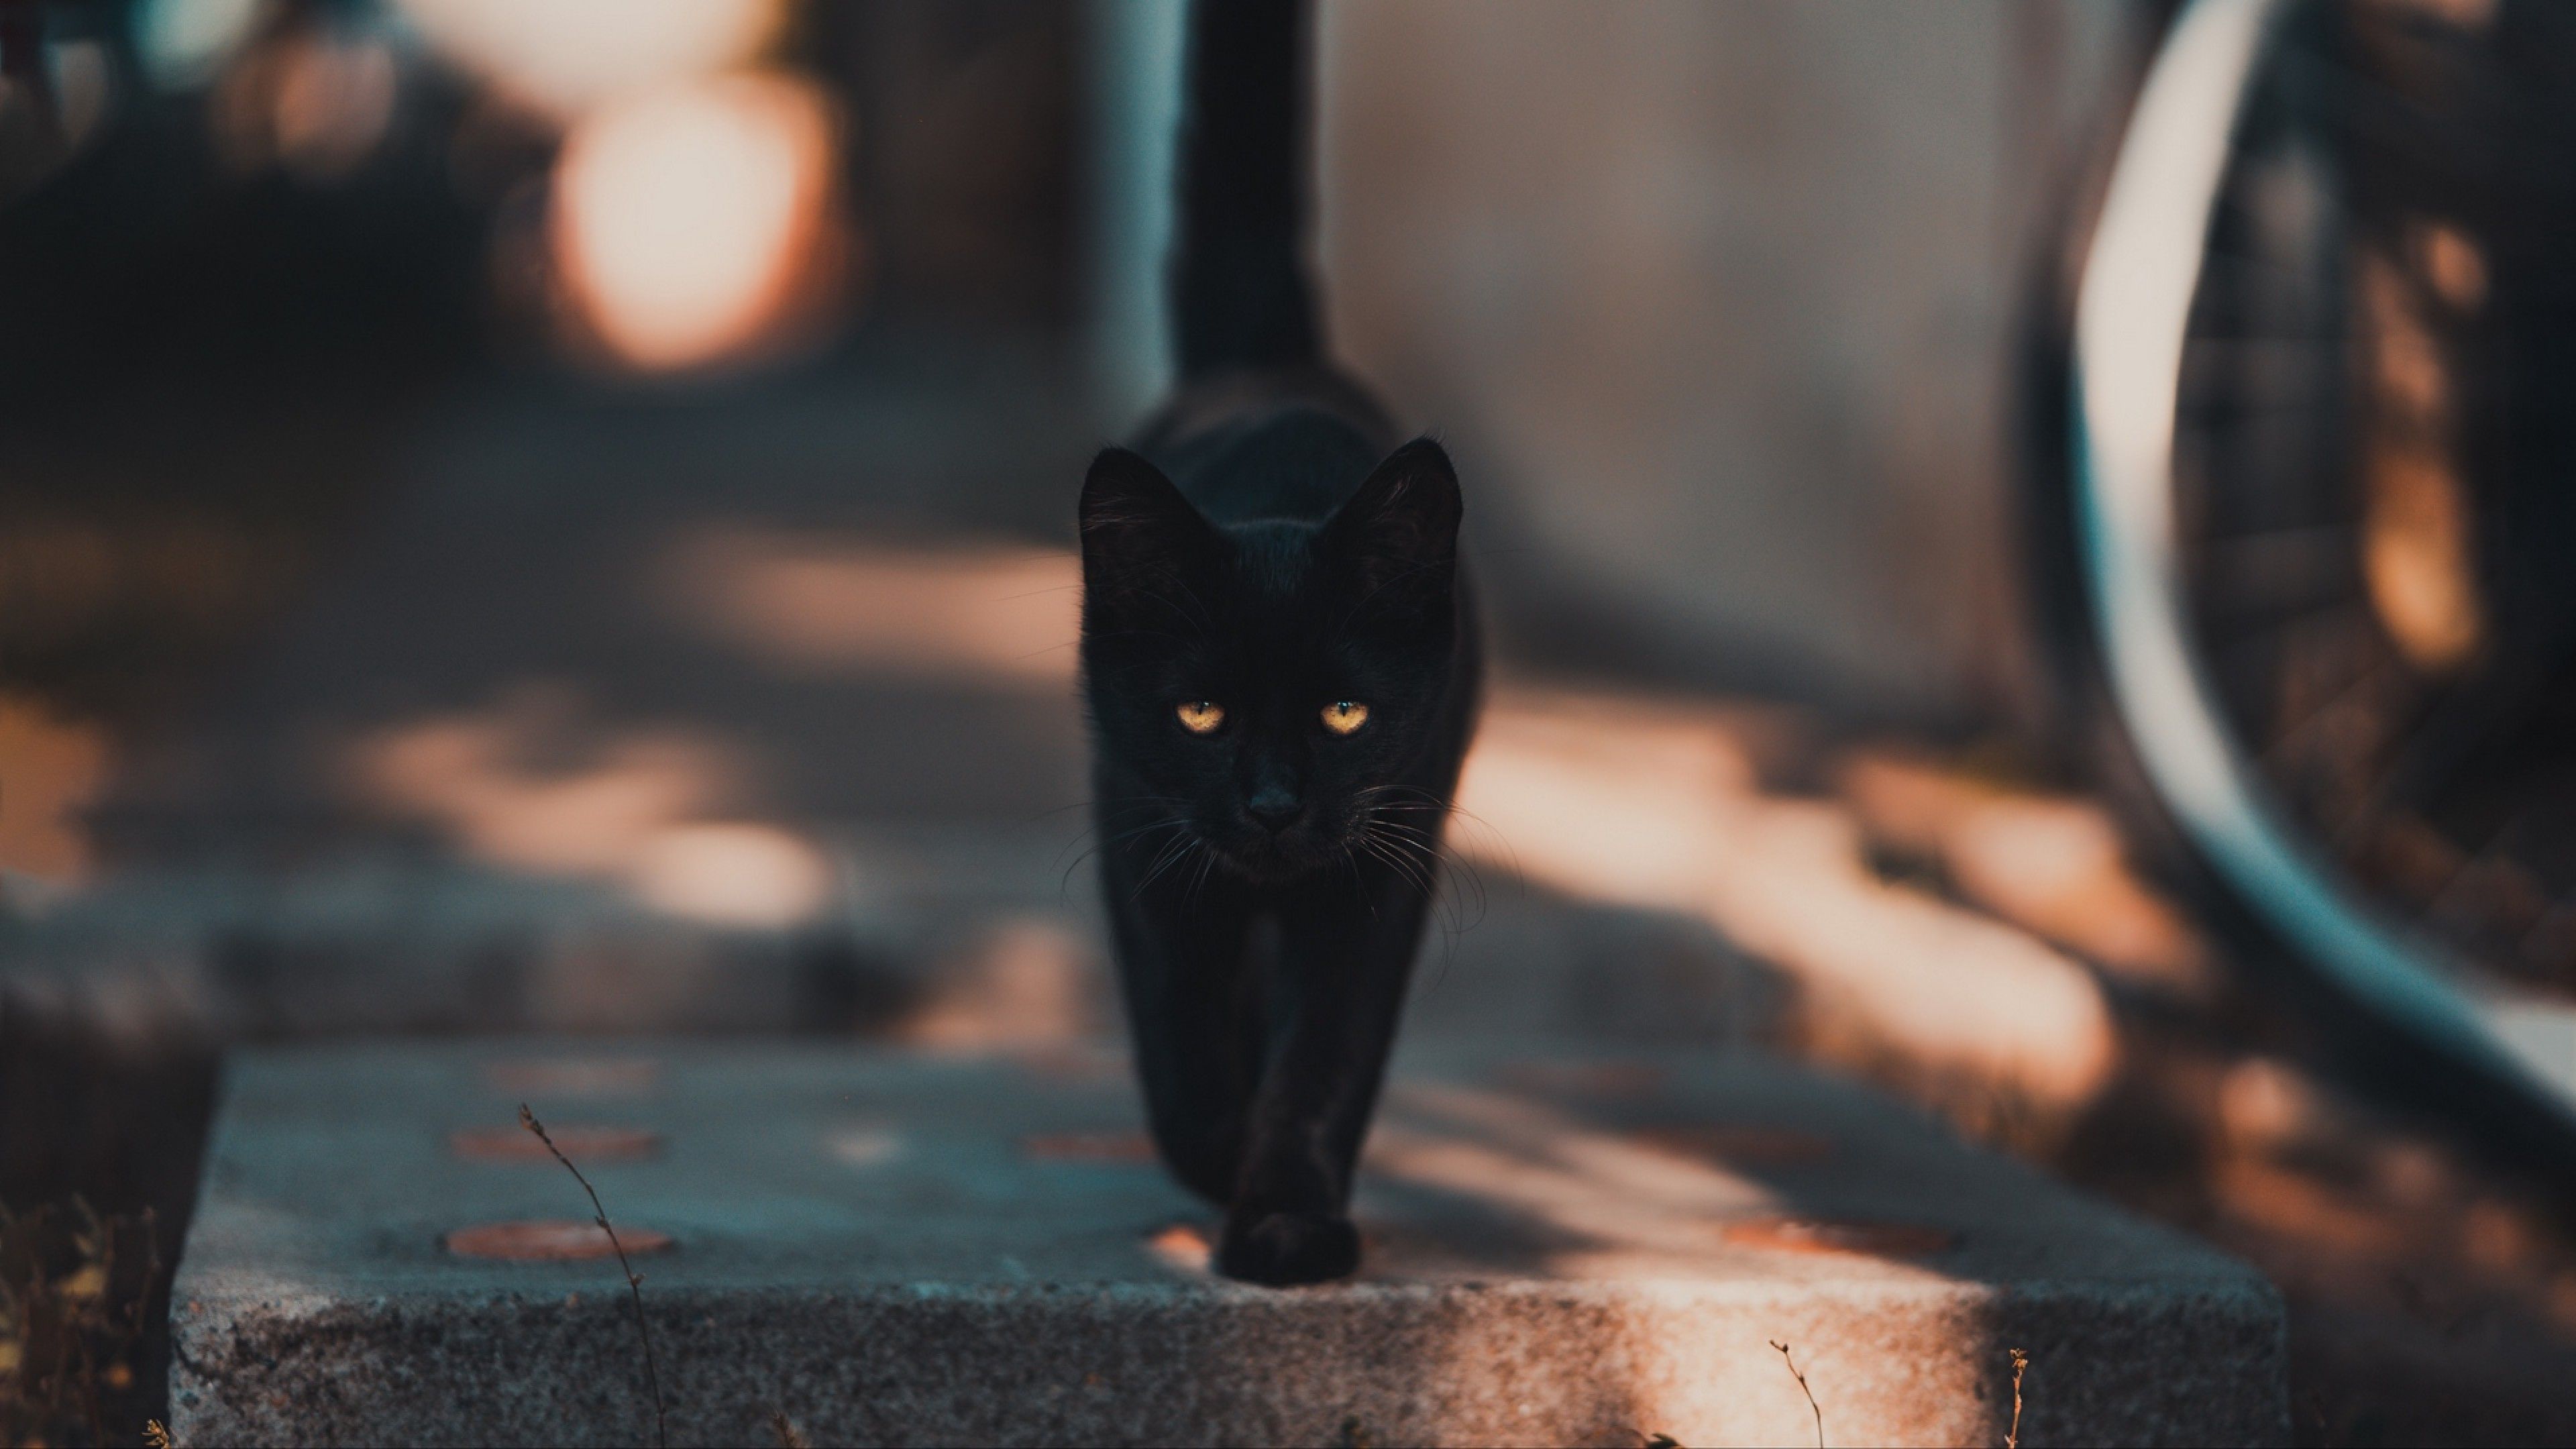 Black cat walking HD Wallpaper 4K Ultra HD Wallpaper